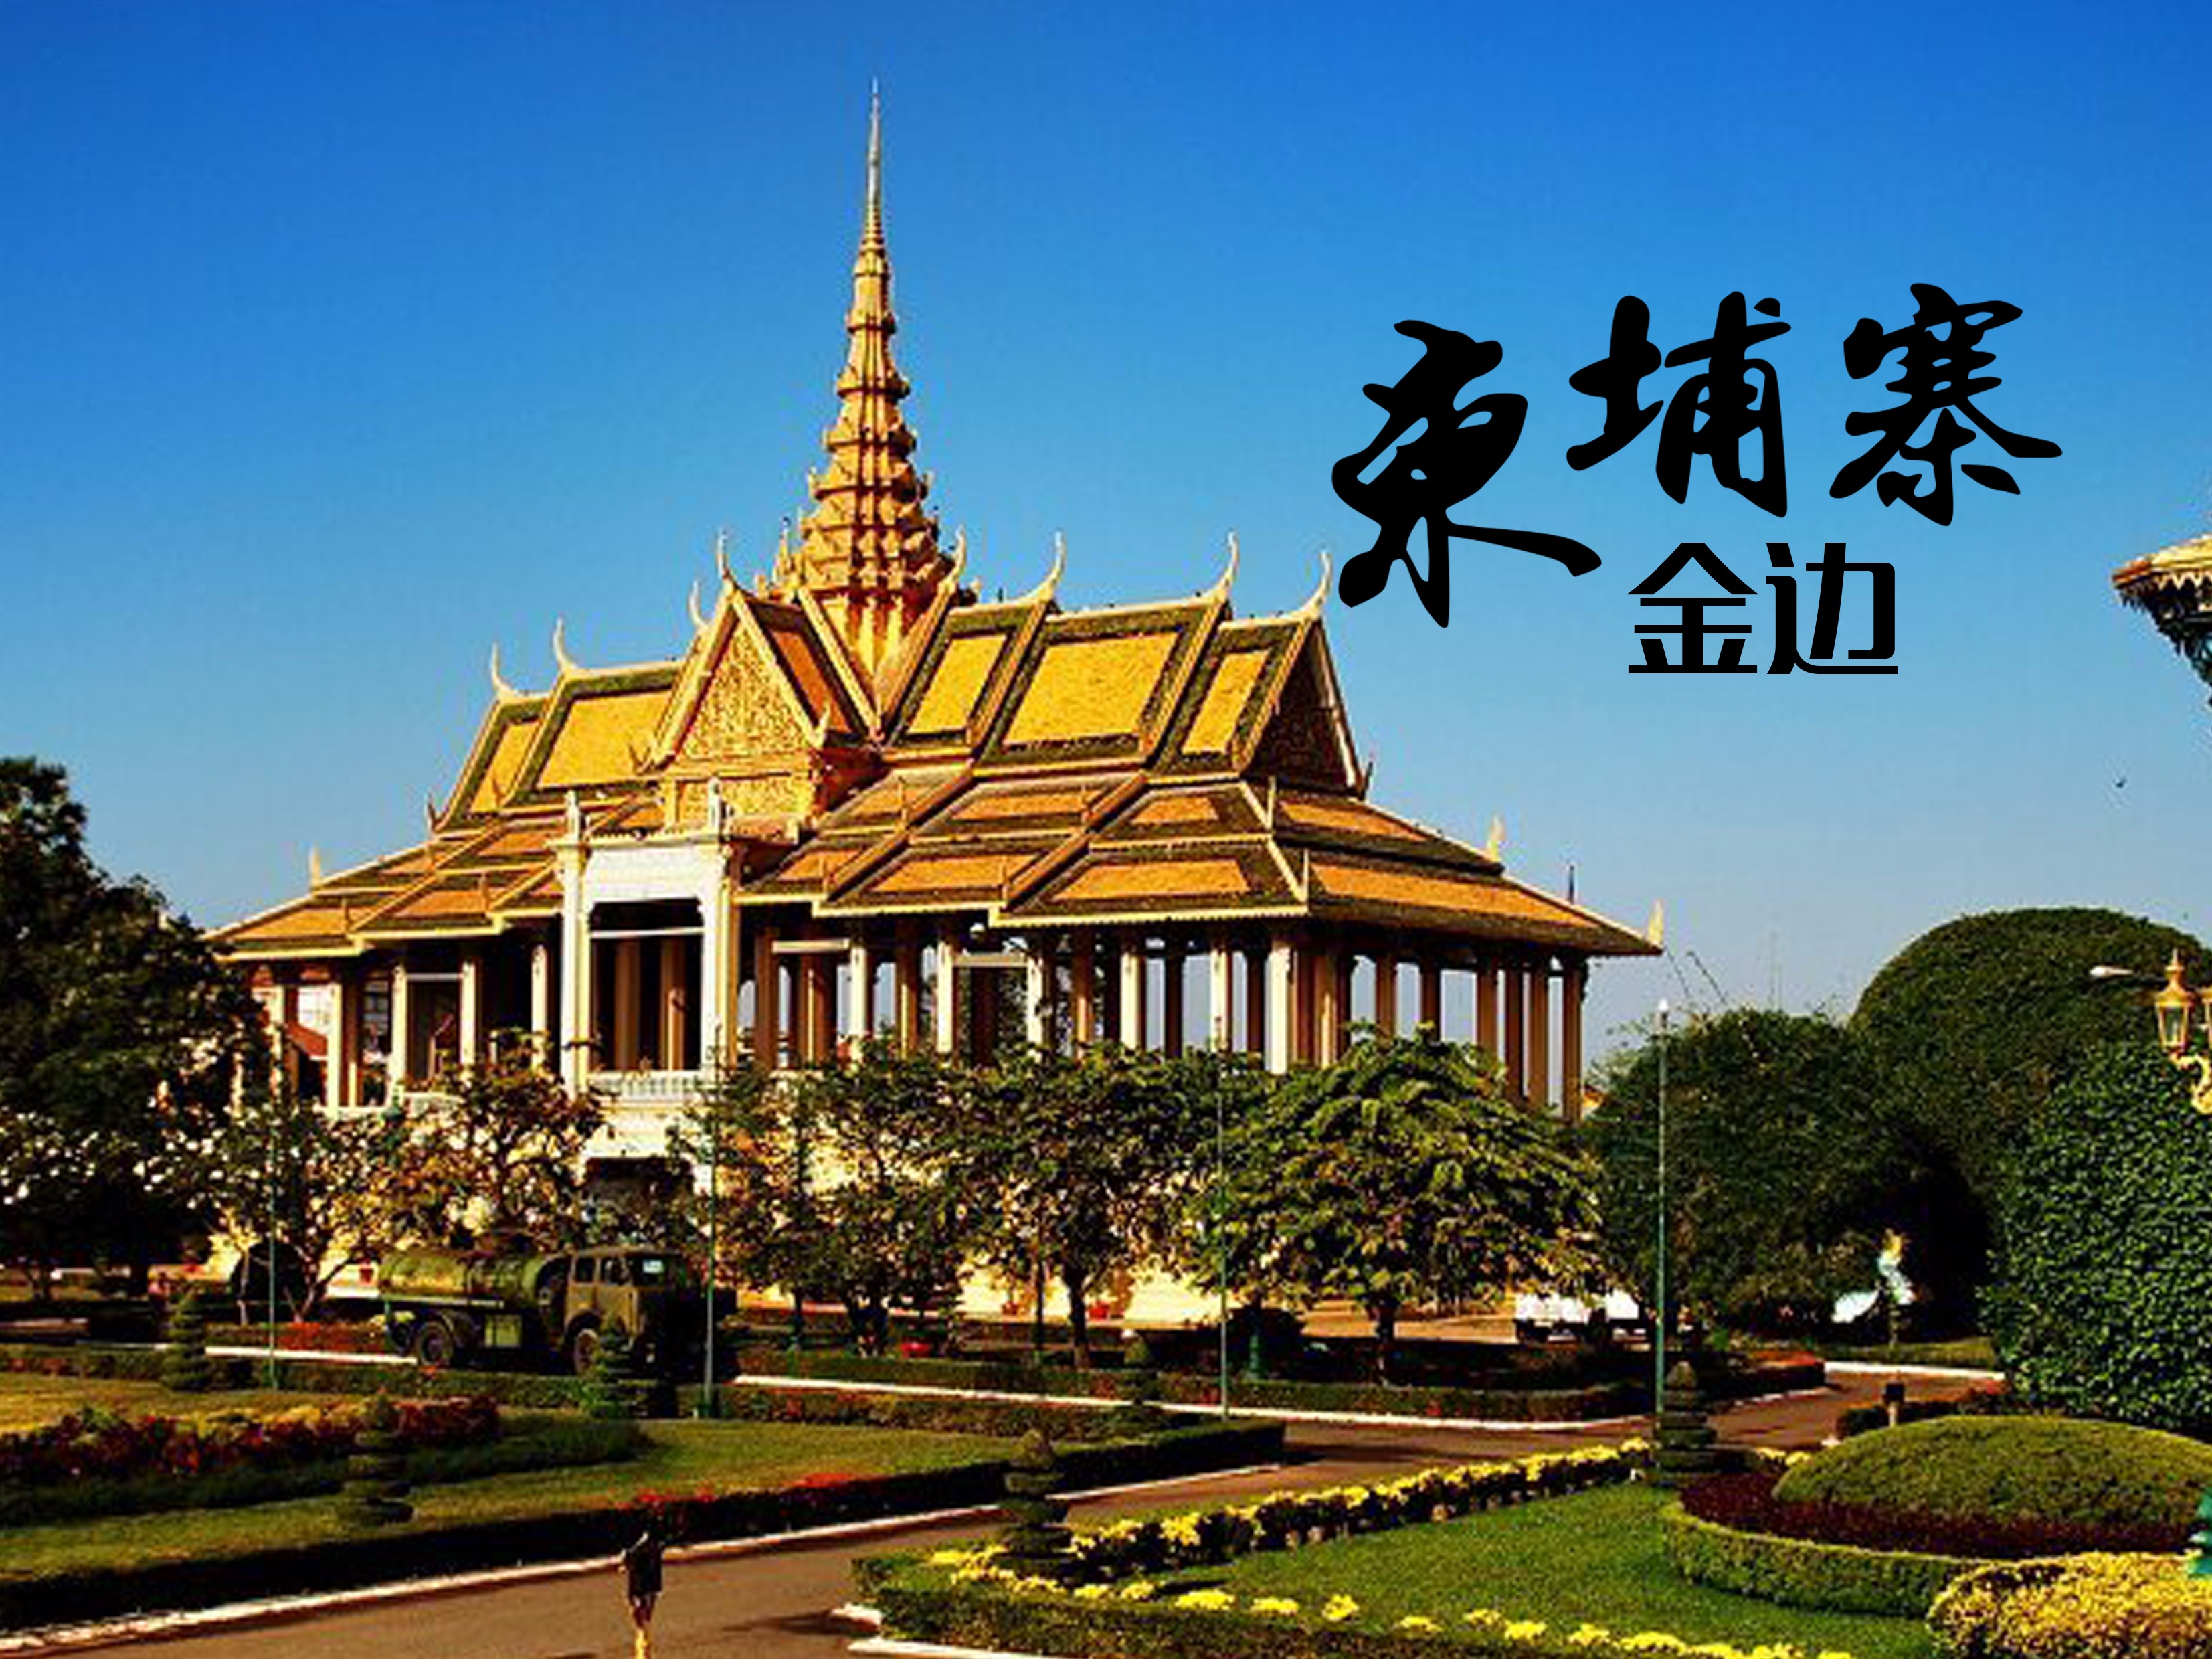 柬埔寨金界赌场 贵宾厅博彩设施将重启 :博讯头条-全方位博彩新闻网站